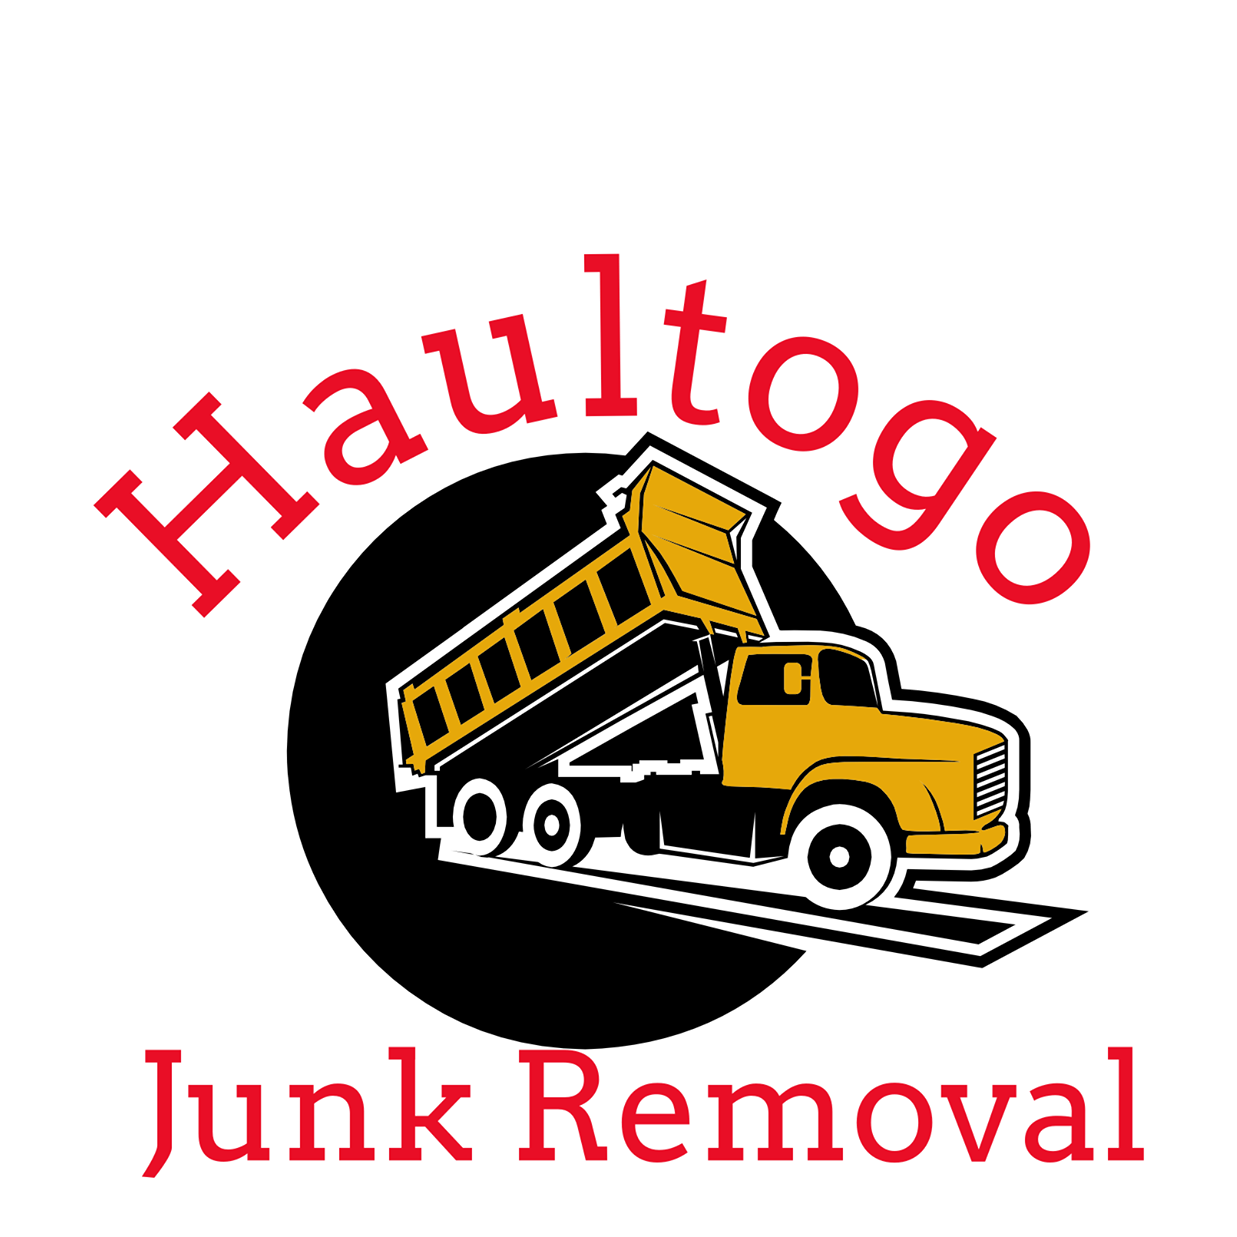 Haultogo Junk Removal